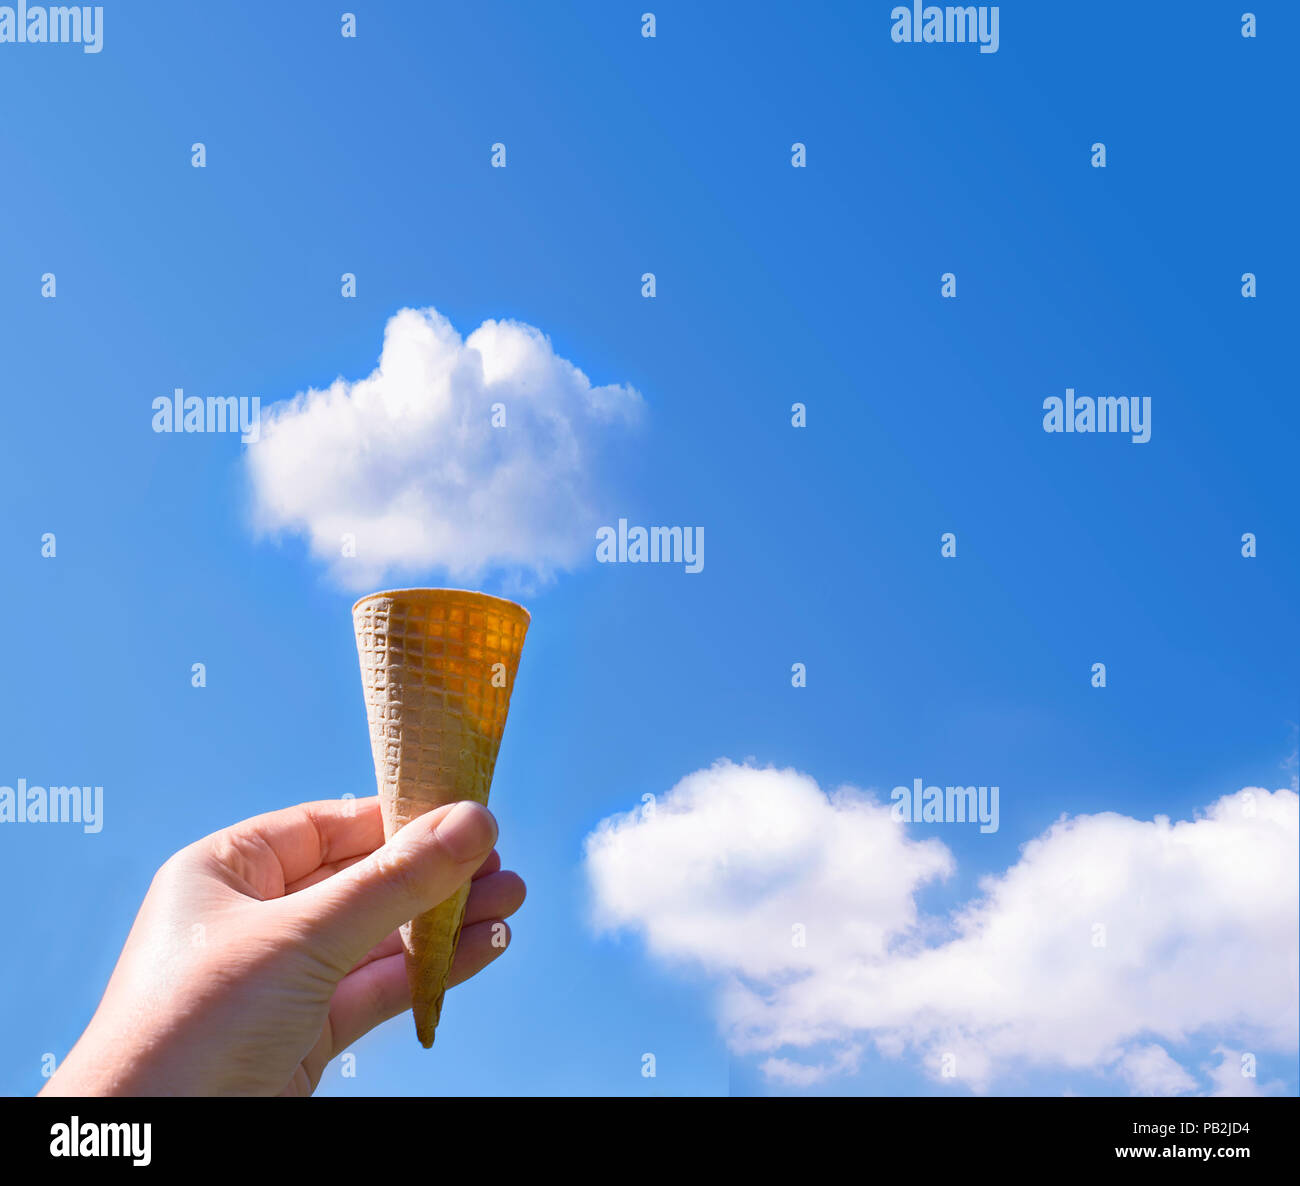 Immagine della mano che tiene cono gelato nel cielo con il soffice nuvola sulla cima del cono Foto Stock